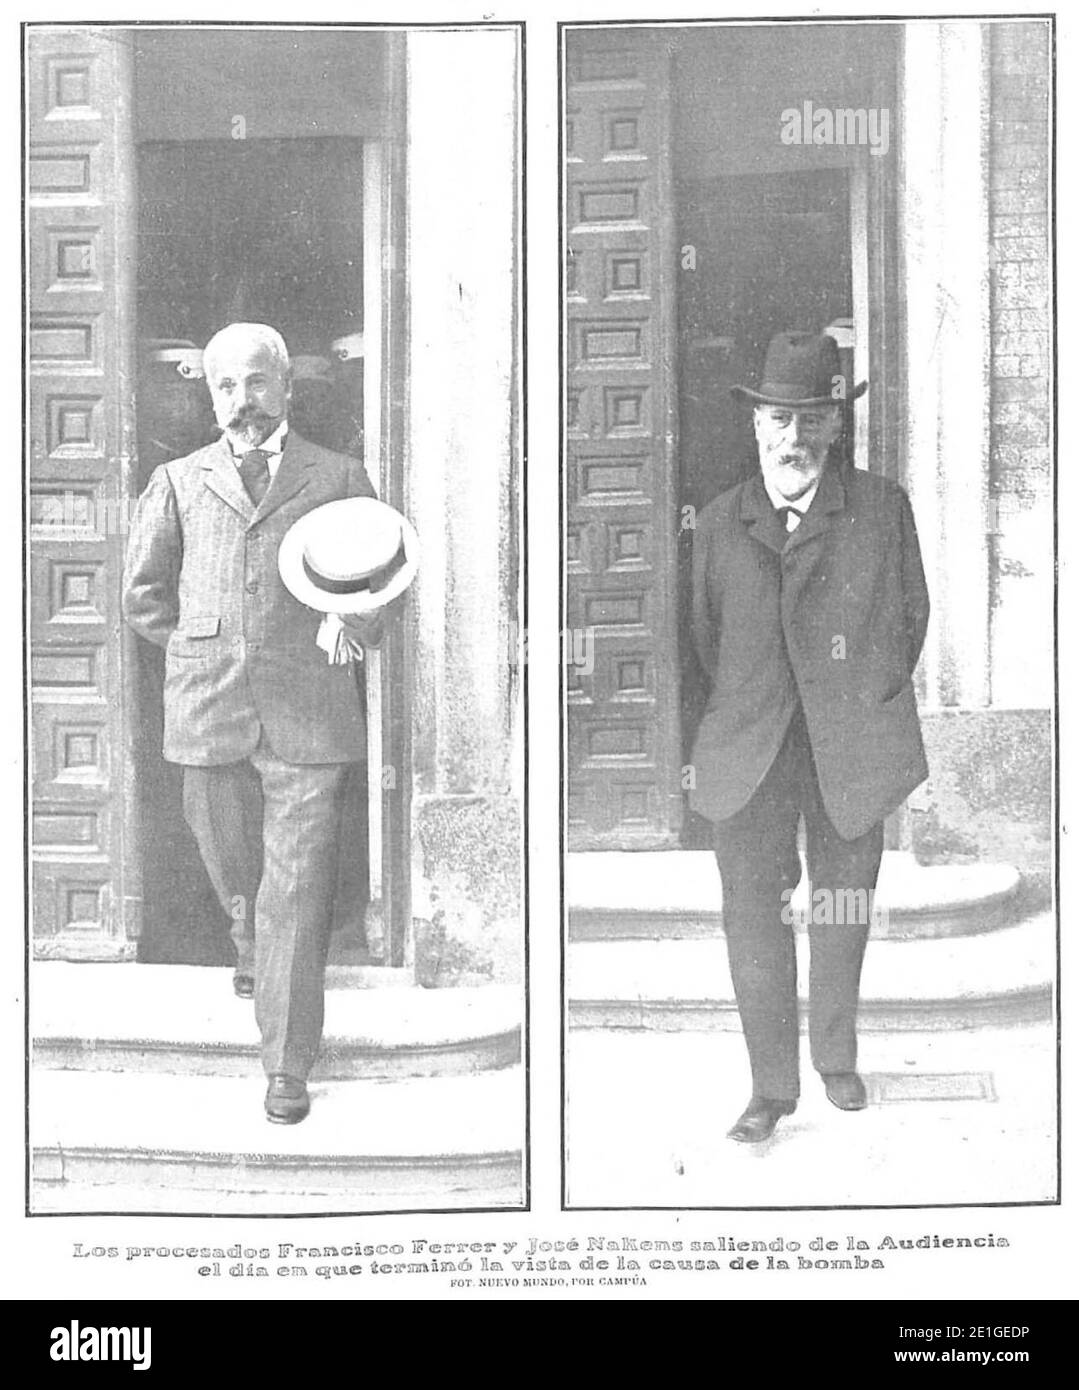 Los procesados Francisco Ferrer y José Nakens saliendo de la Audiencia el día en que terminó la vista de la causa de la bomba, Nuevo Mundo, 27-06-1907. Stockfoto